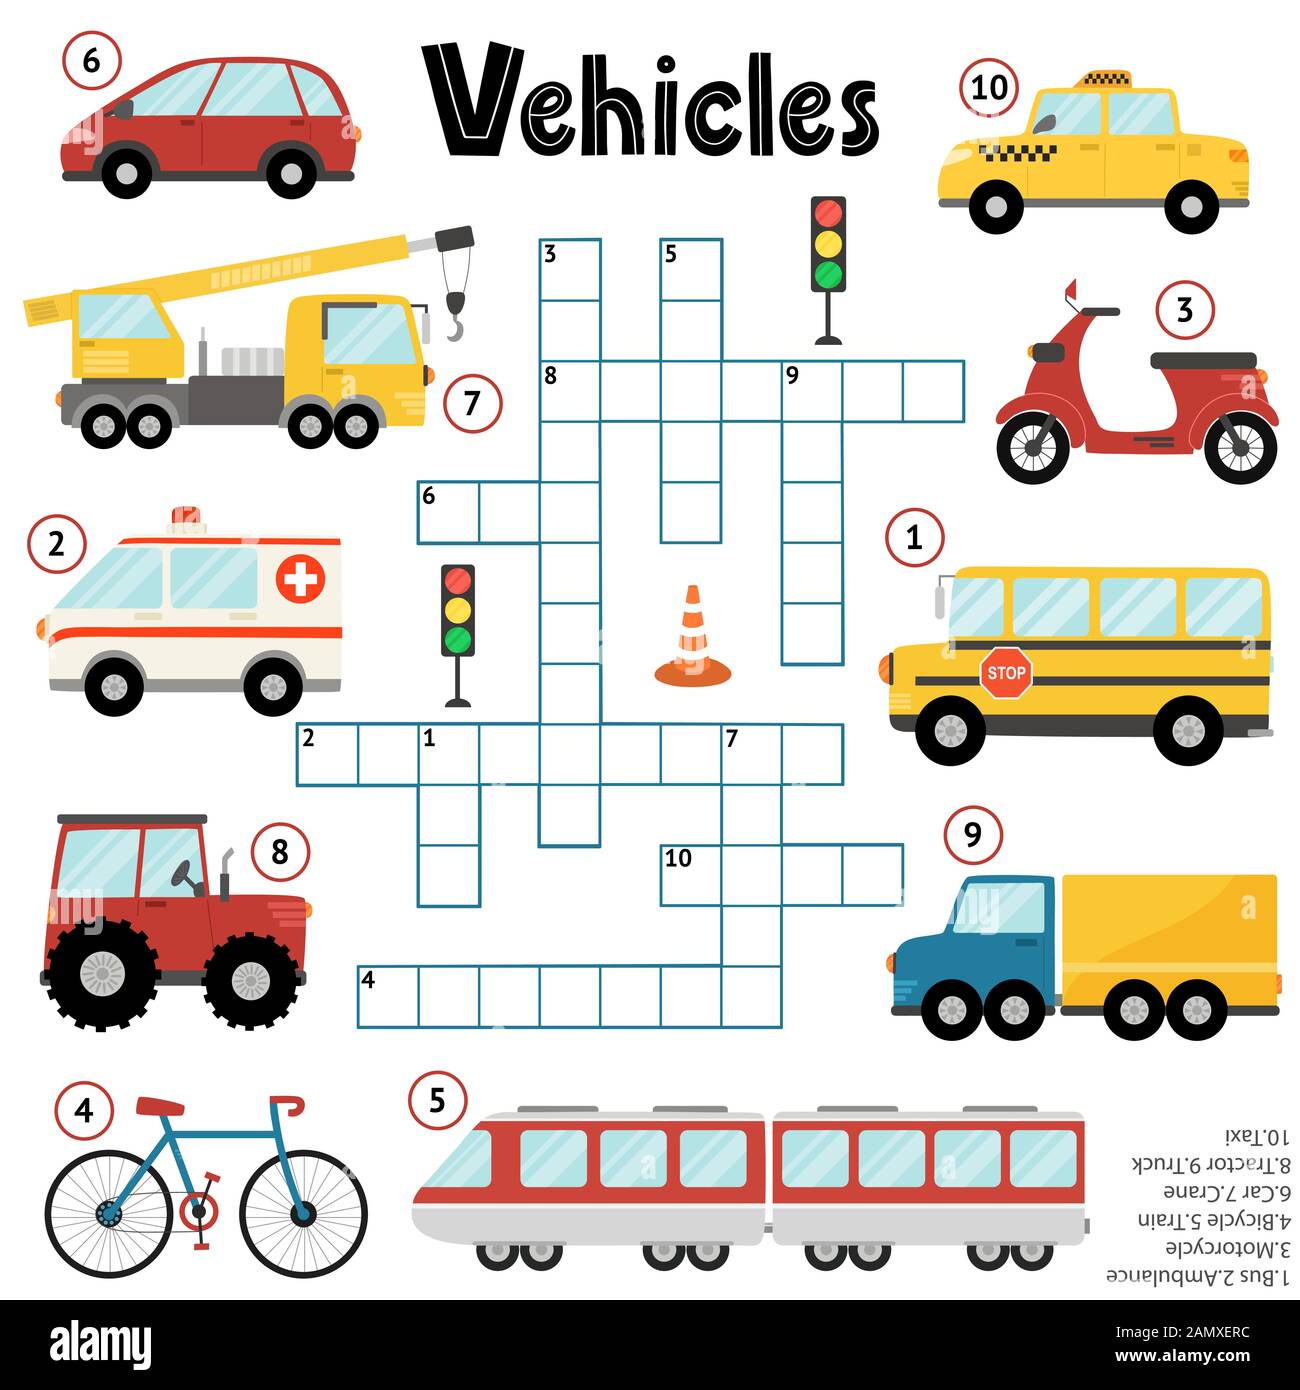 Jeu de puzzle en mots croisés pour les enfants sur les véhicules Illustration de Vecteur